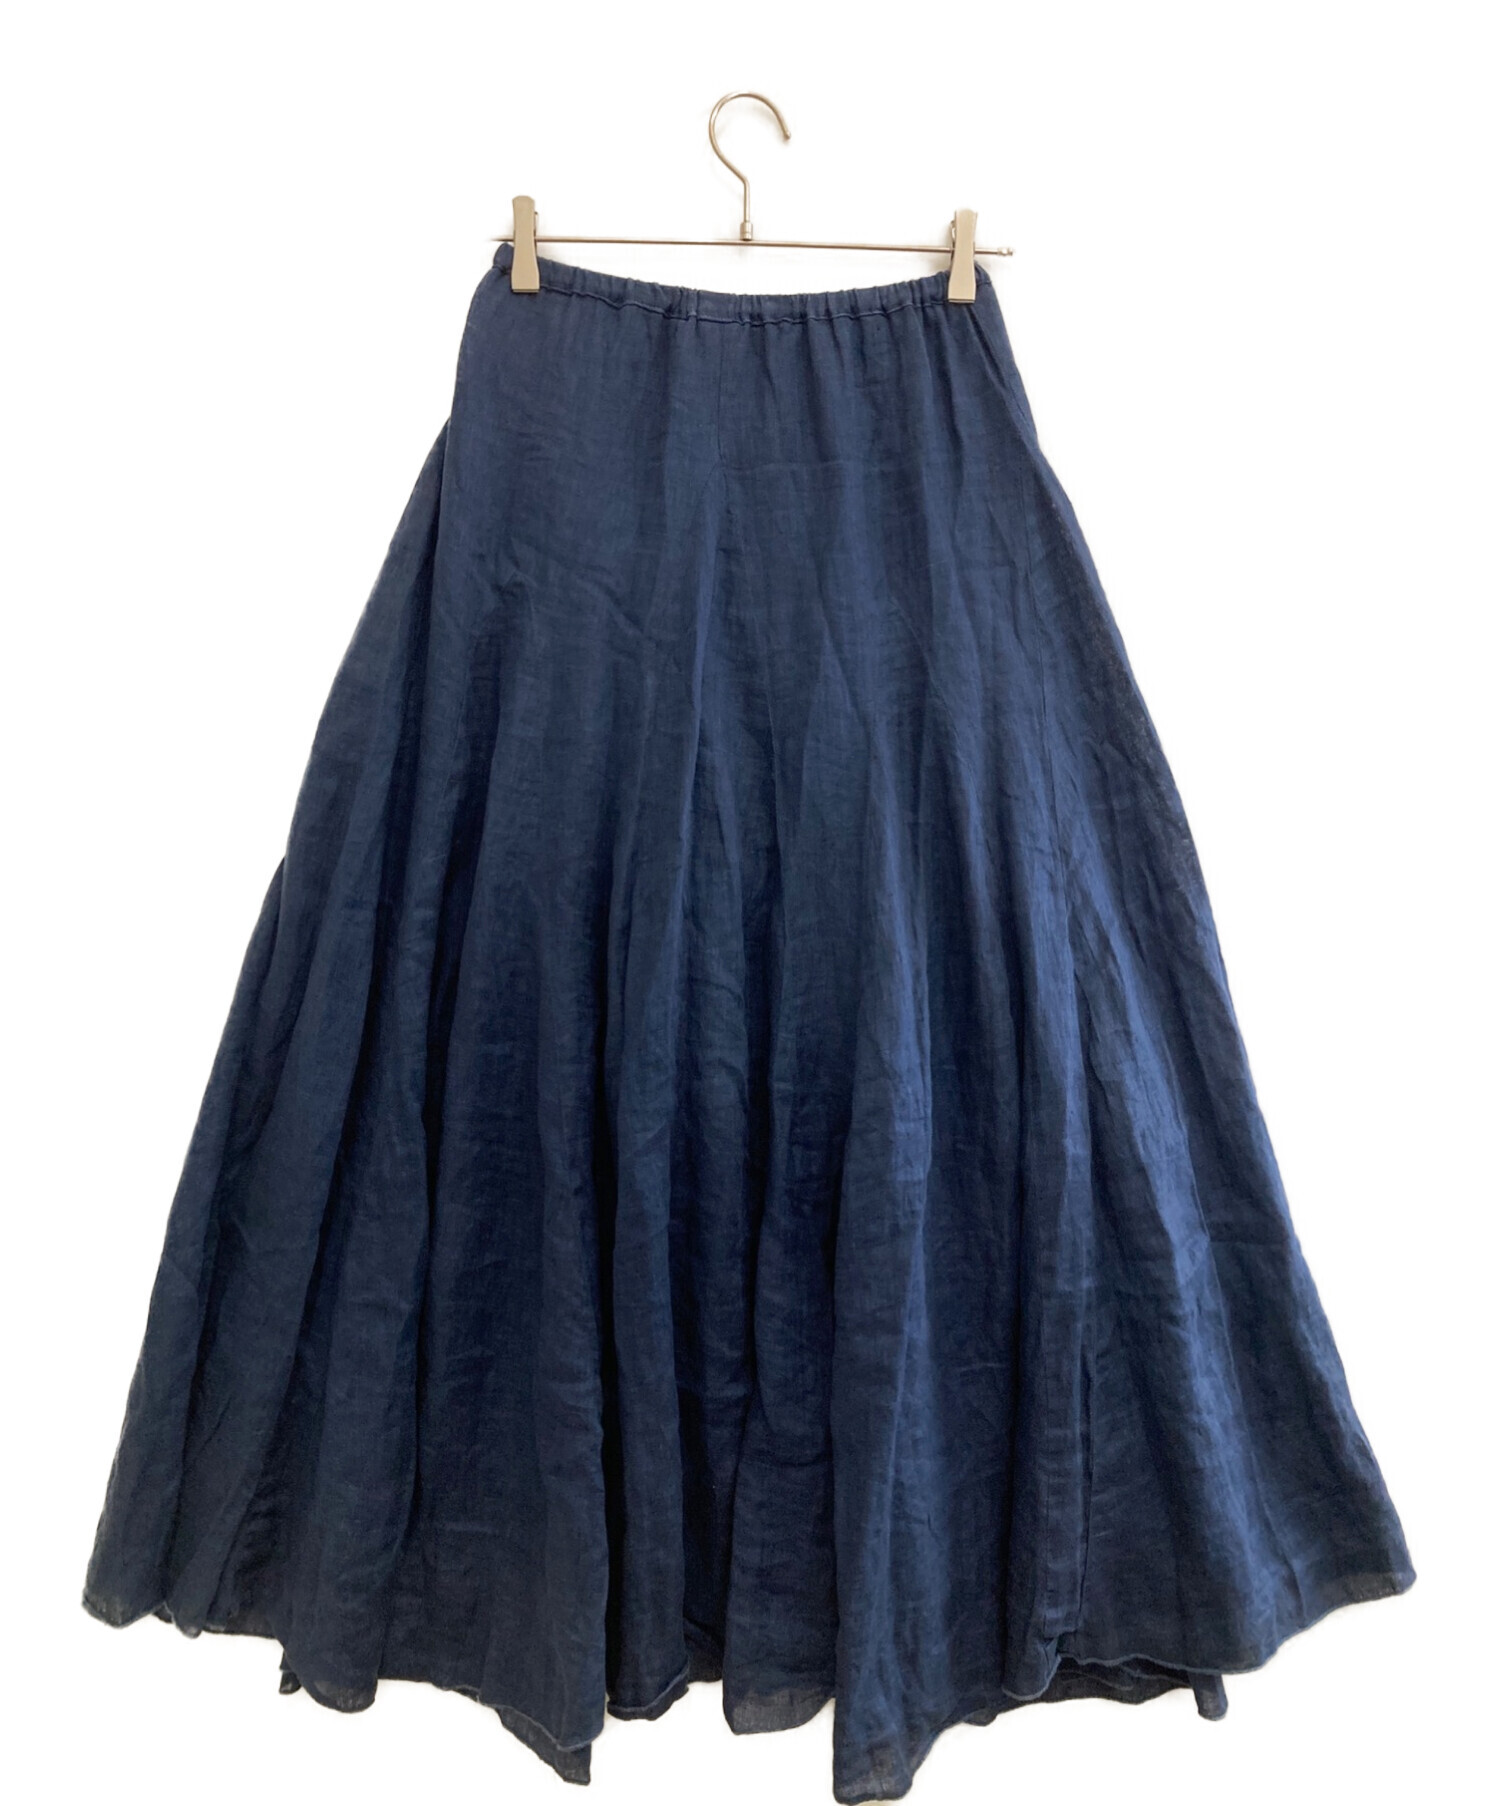 人気商品ランキング 2021 Ron 美品 Herman Ron CP shades Linen Lily × linen skirt ファッション  XS SHADES レディース